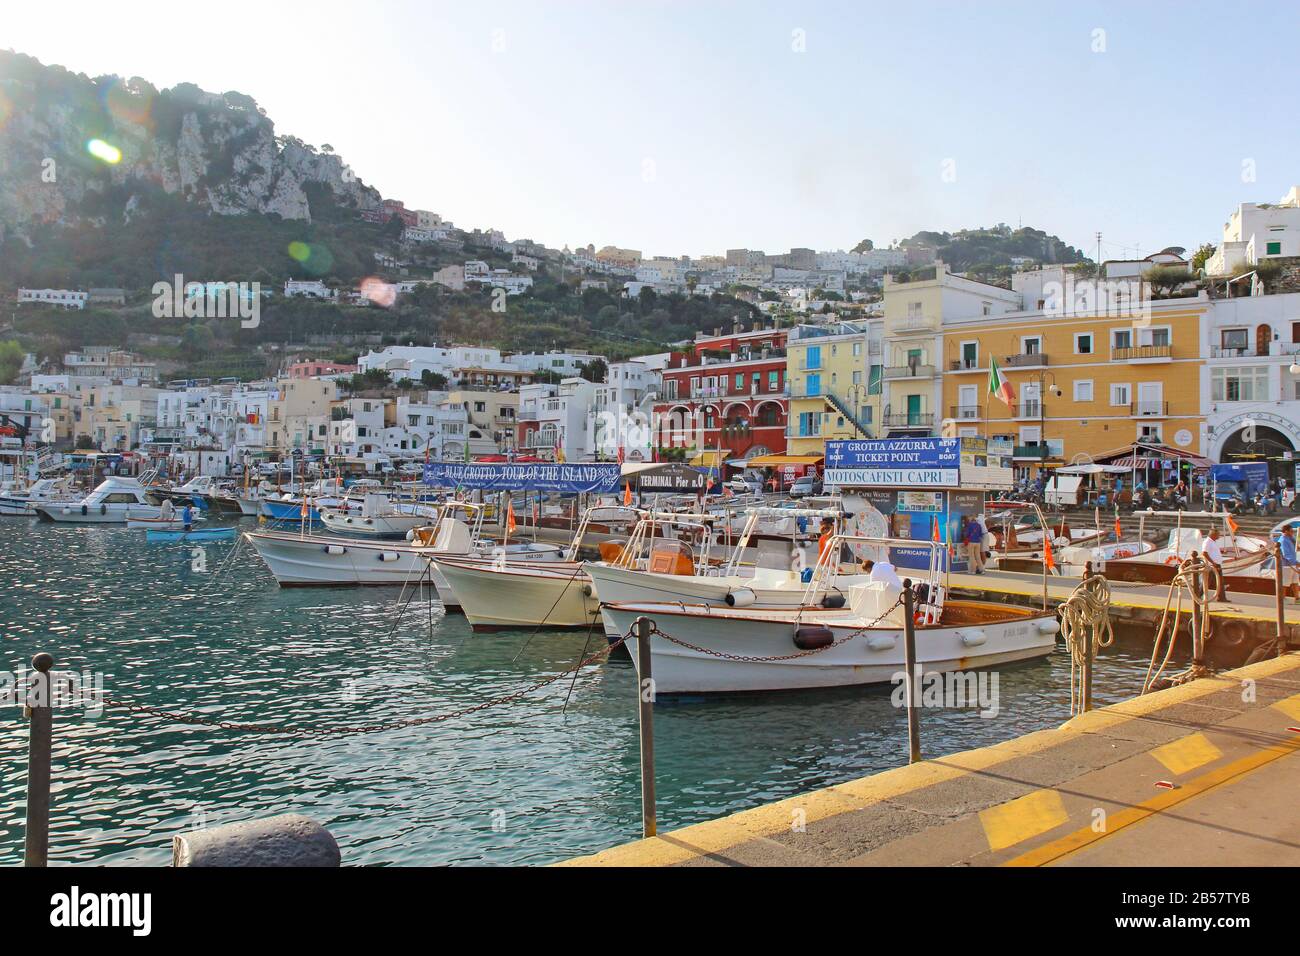 Tour degli operatori e degli edifici di Marina Grande sull'isola di Capri. Le barche che partono dal molo 0 forniscono tour in tutta l'isola. Foto Stock